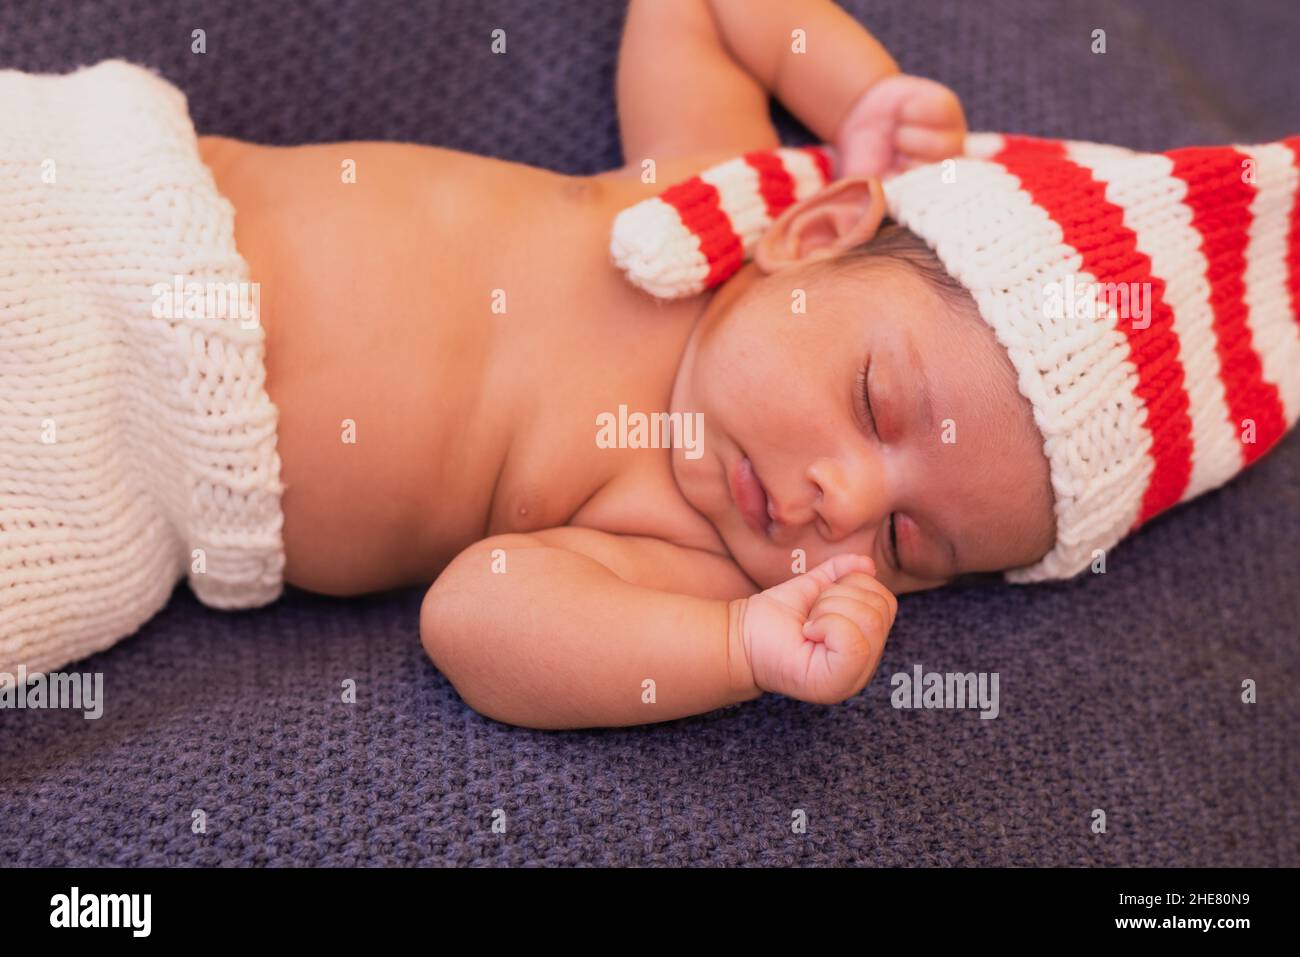 Le nouveau-né allongé dans un chapeau rayé est endormi avec ses mains clastées Banque D'Images